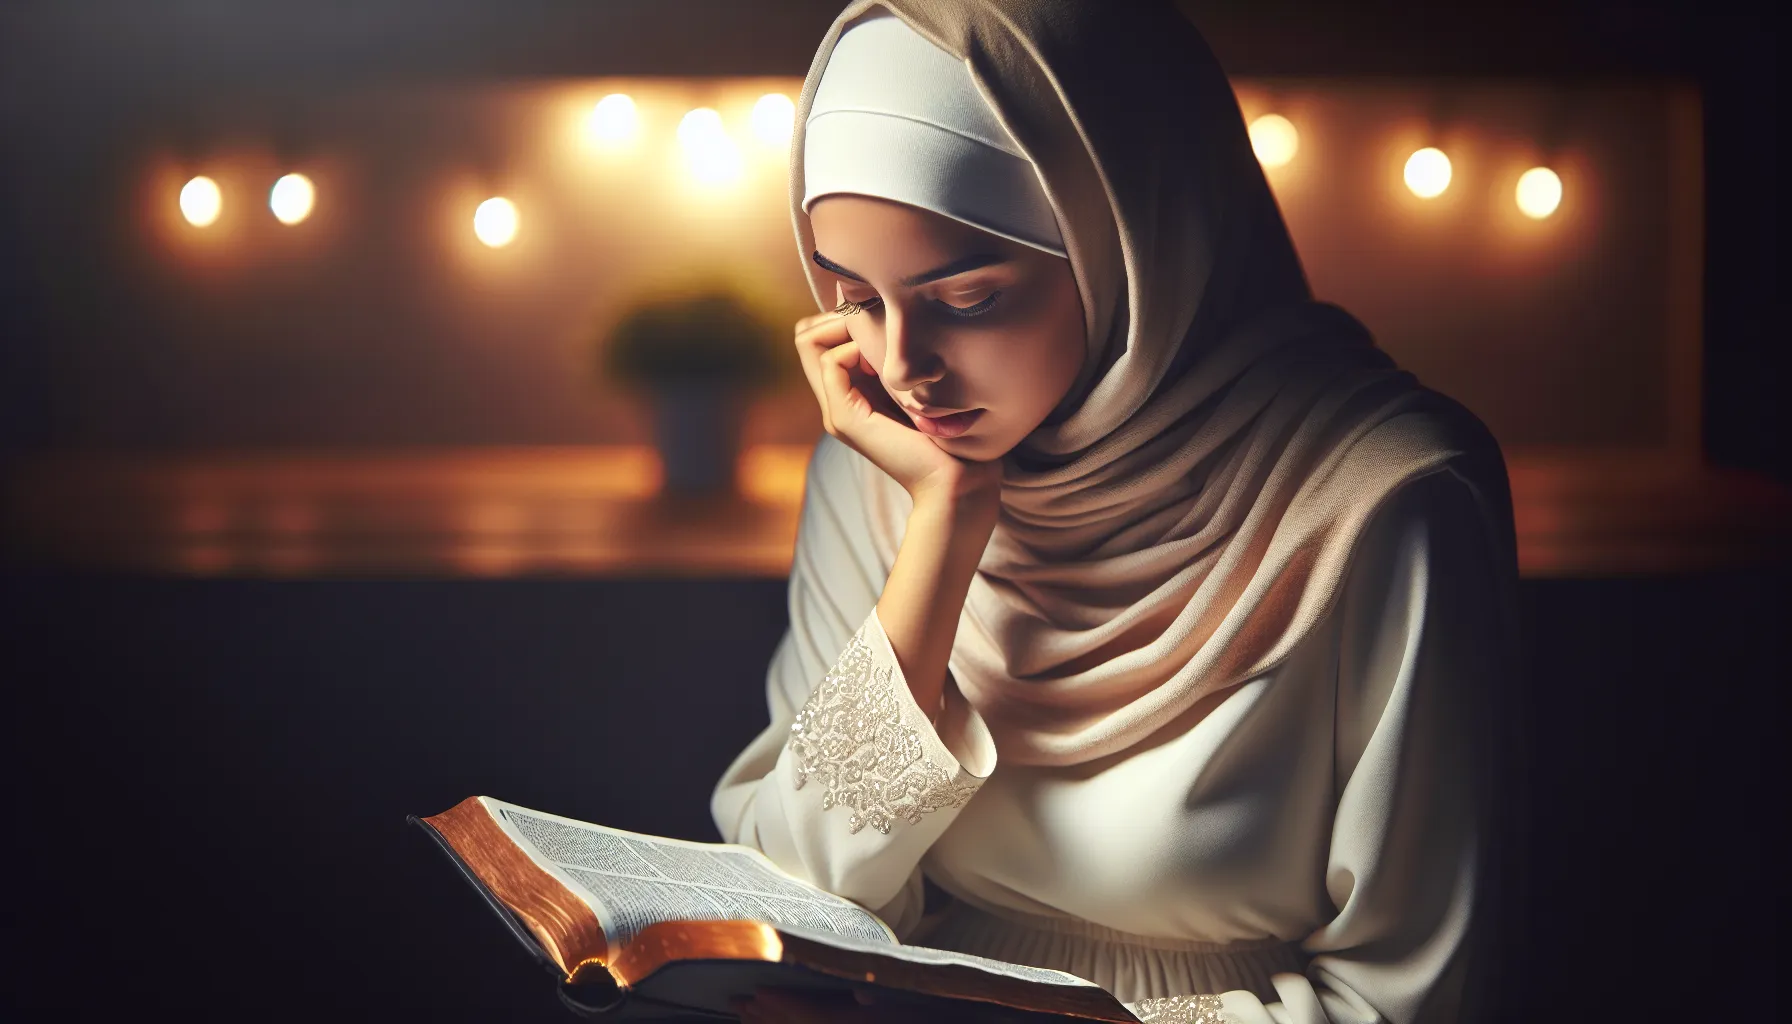 Imagen representativa de una persona leyendo la Biblia y reflexionando sobre a quién y por qué debemos someternos según la enseñanza bíblica